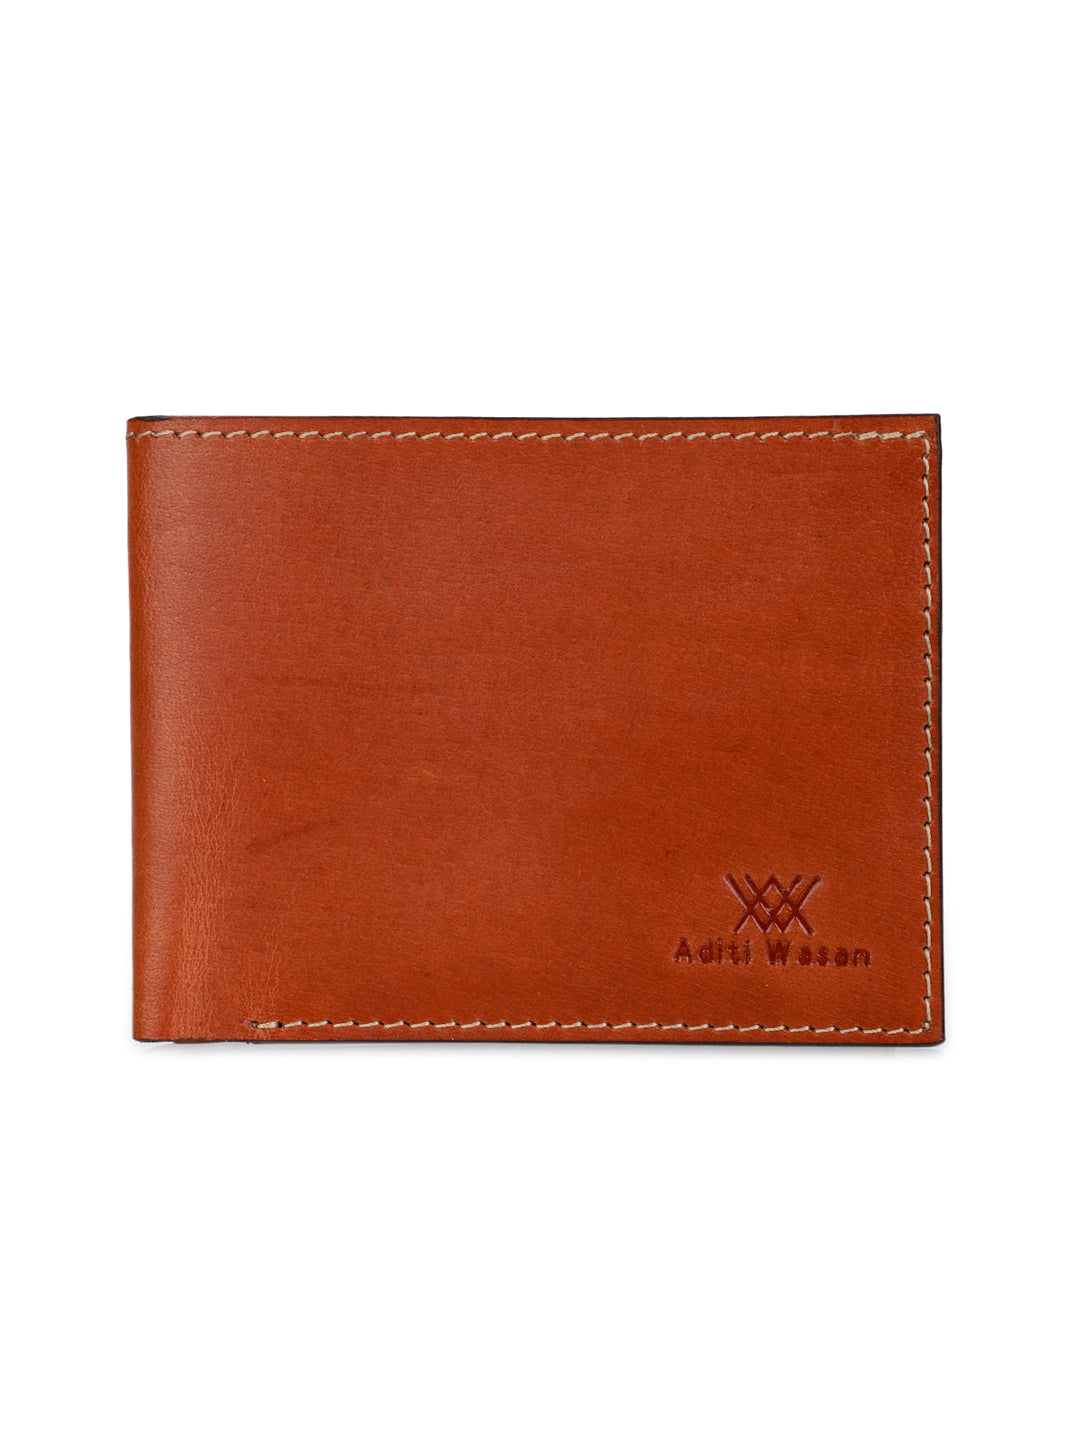 Two tone brown bi-fold wallet - Aditi Wasan